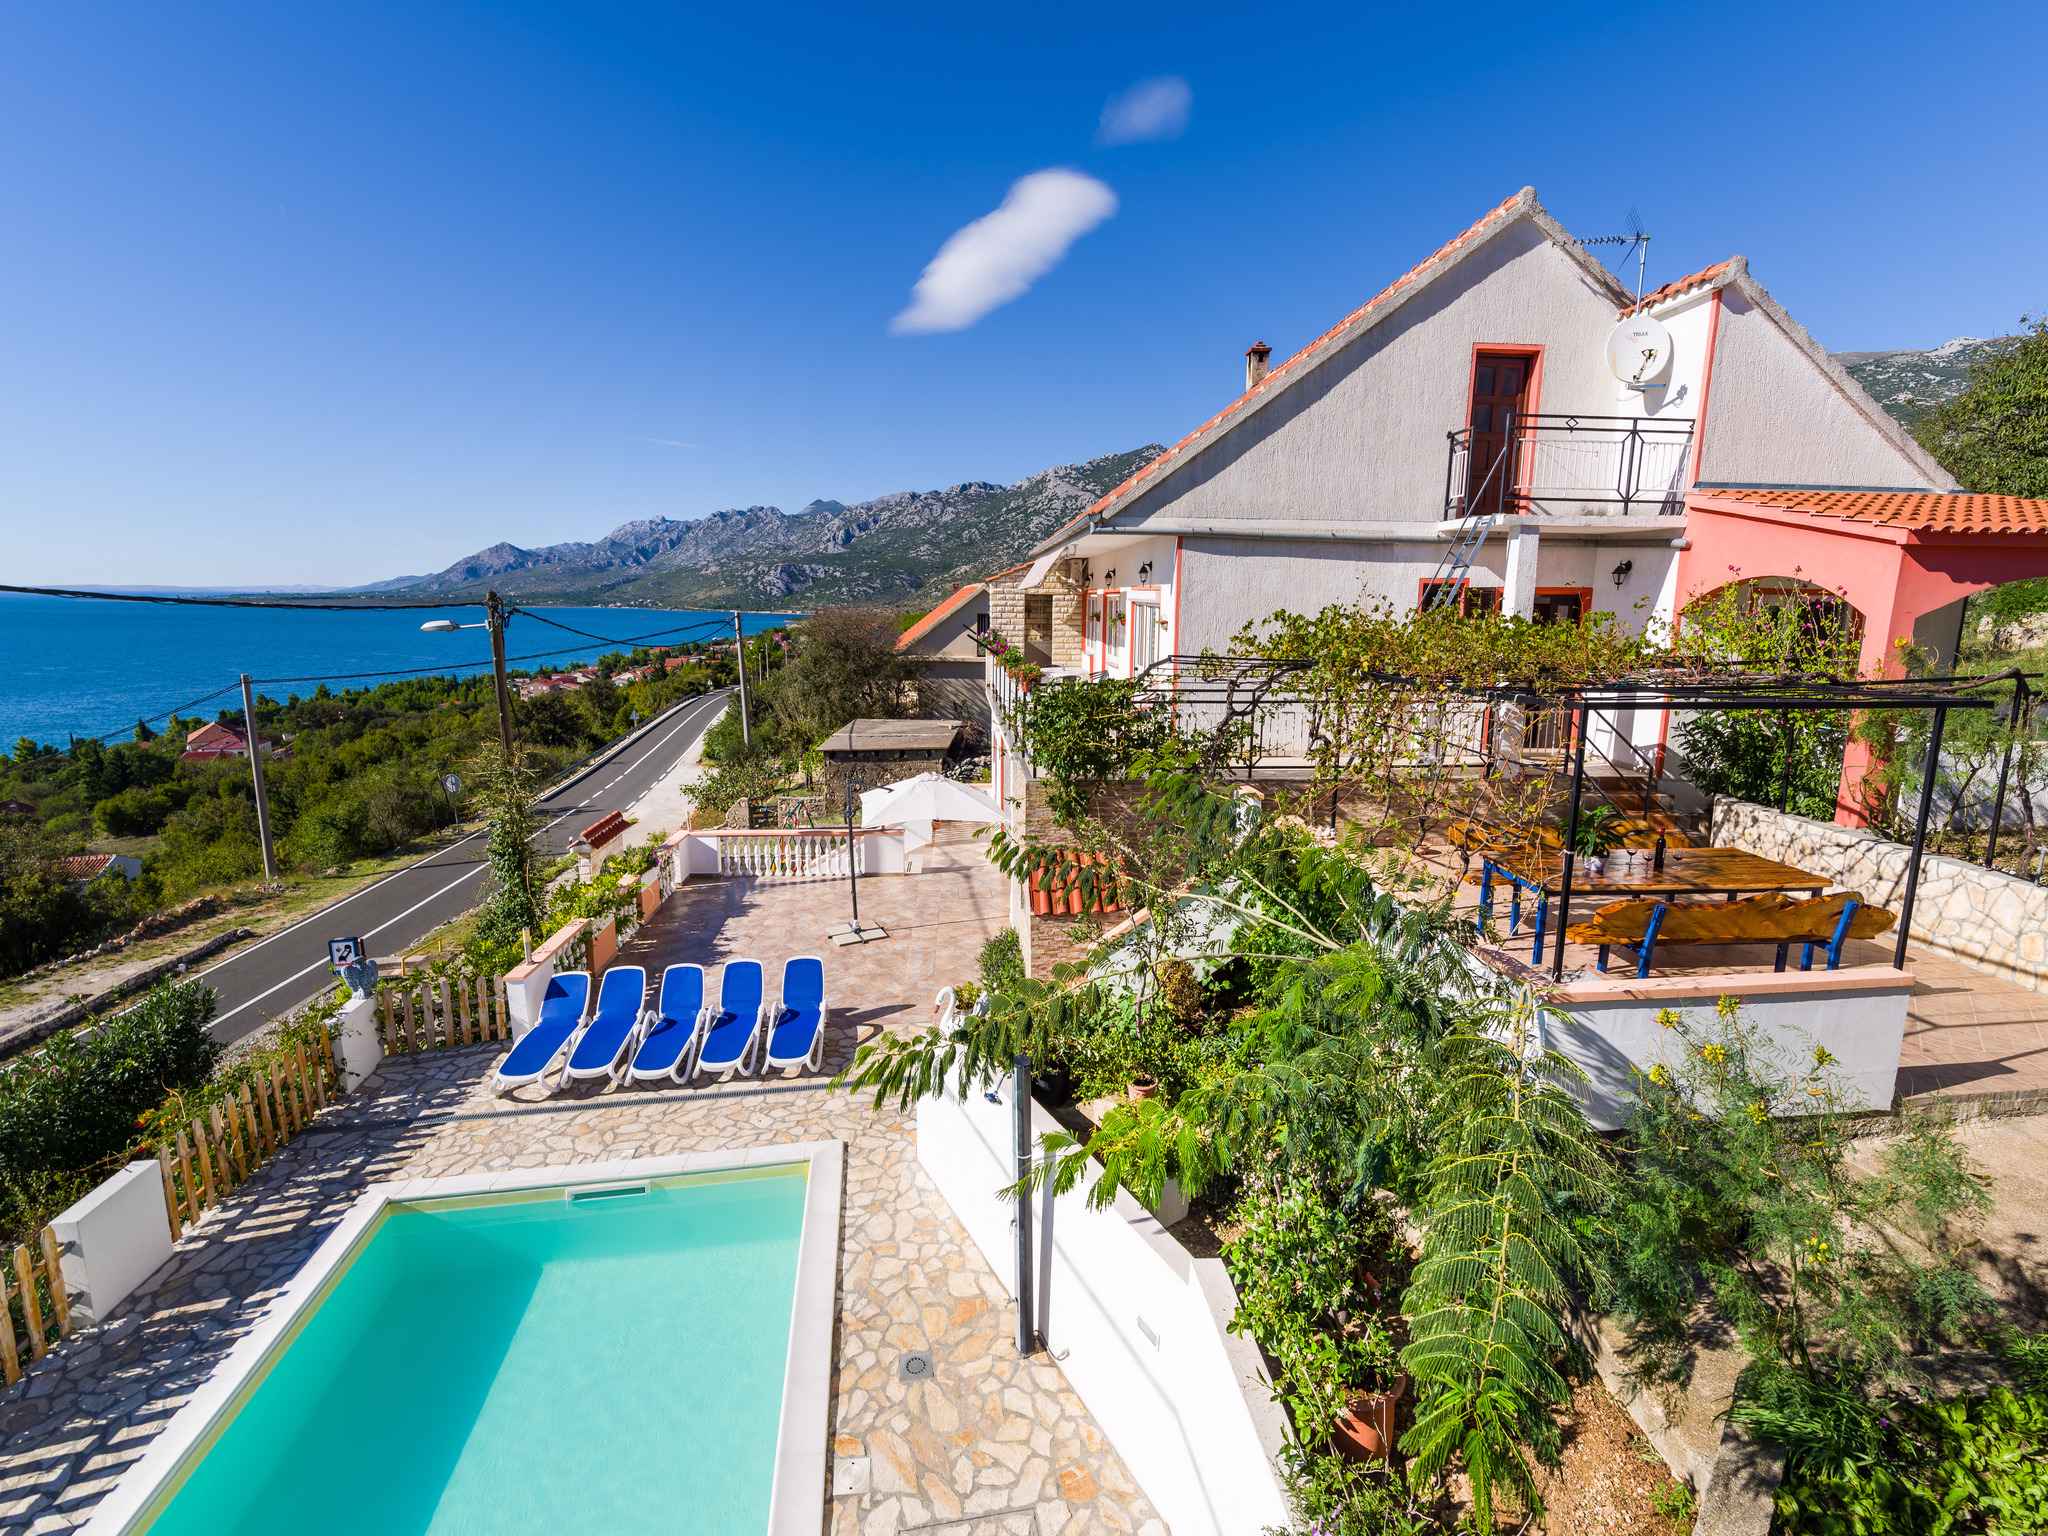 Ferienhaus mit Pool und Meerblick Ferienhaus in Kroatien